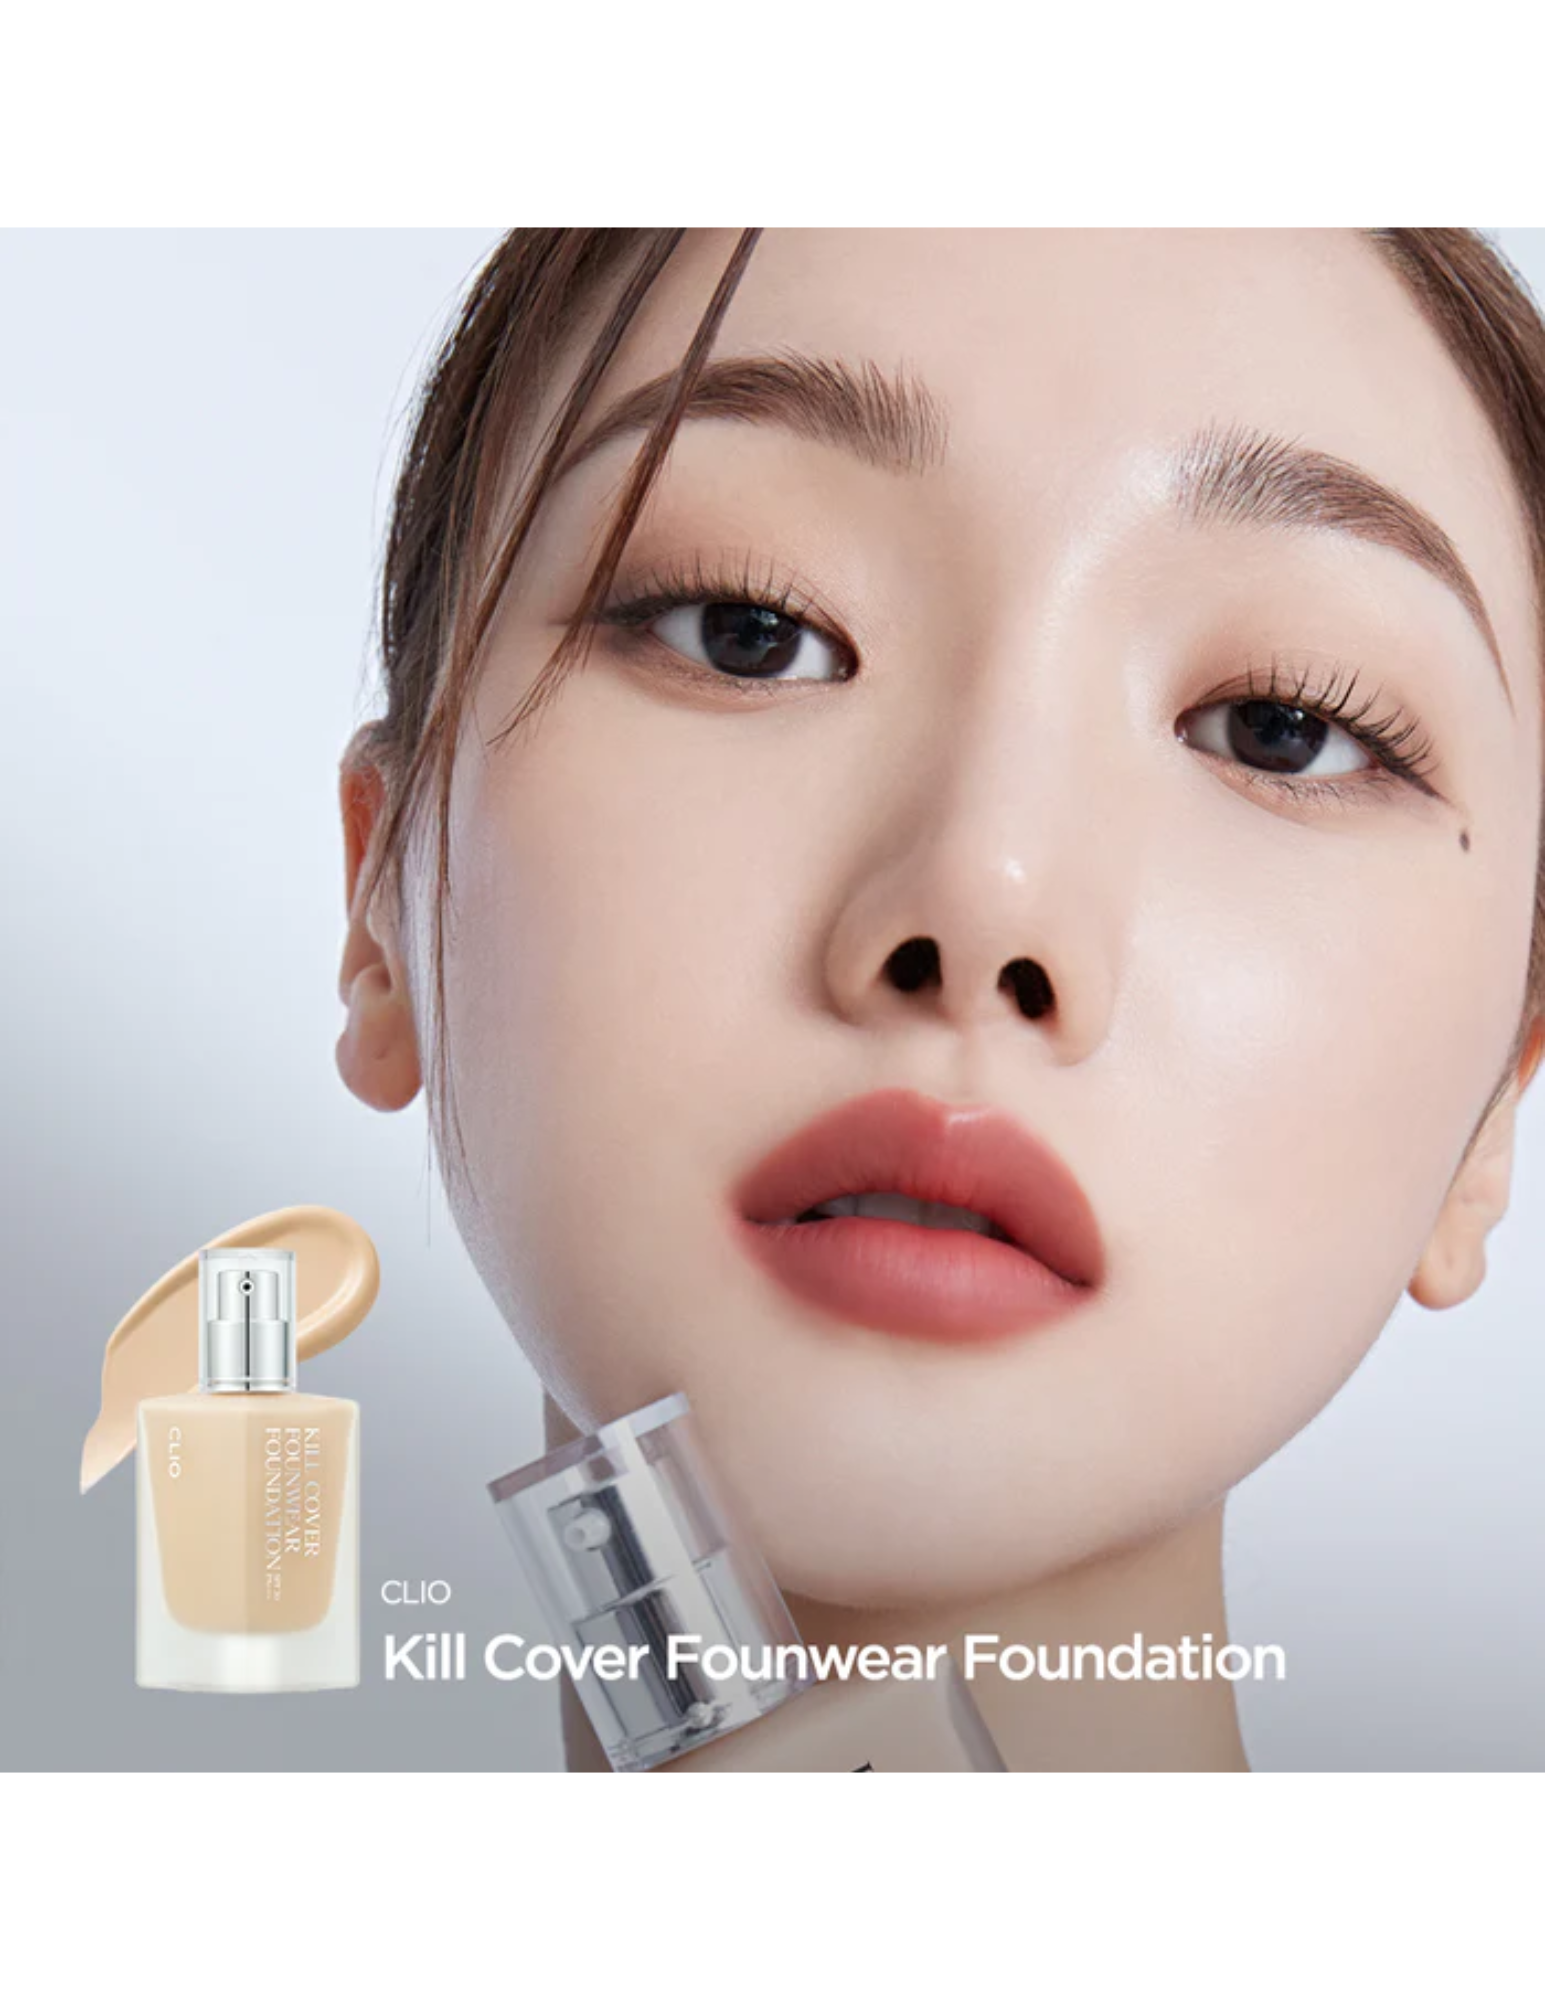 CLIO Kill Cover Founwear Foundation